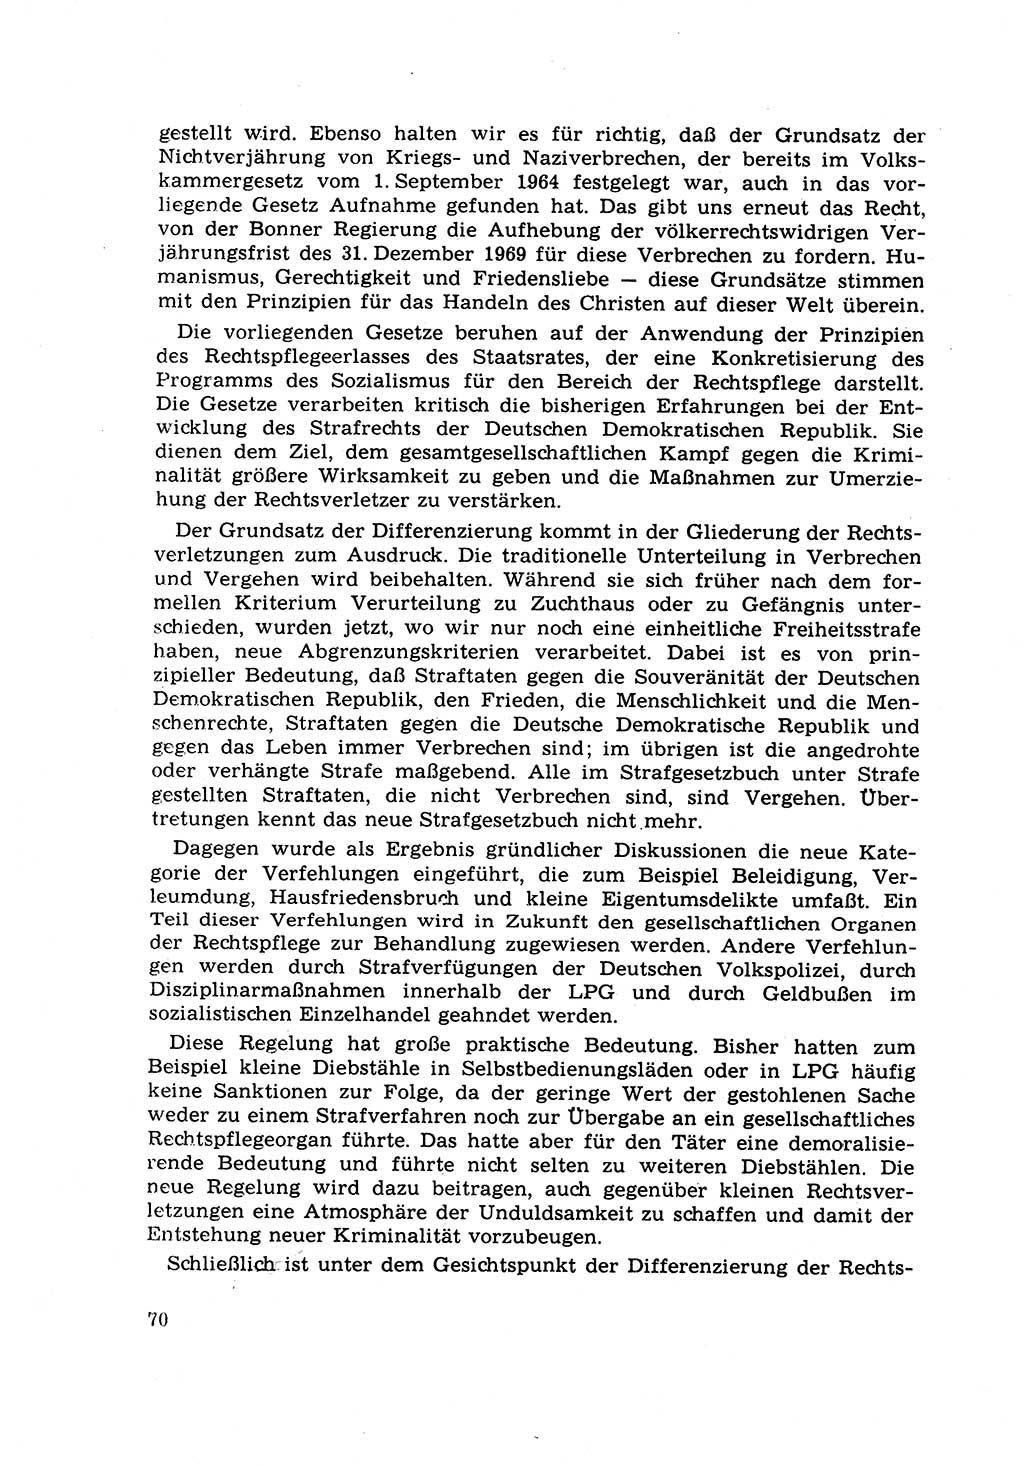 Strafrecht [Deutsche Demokratische Republik (DDR)] 1968, Seite 70 (Strafr. DDR 1968, S. 70)